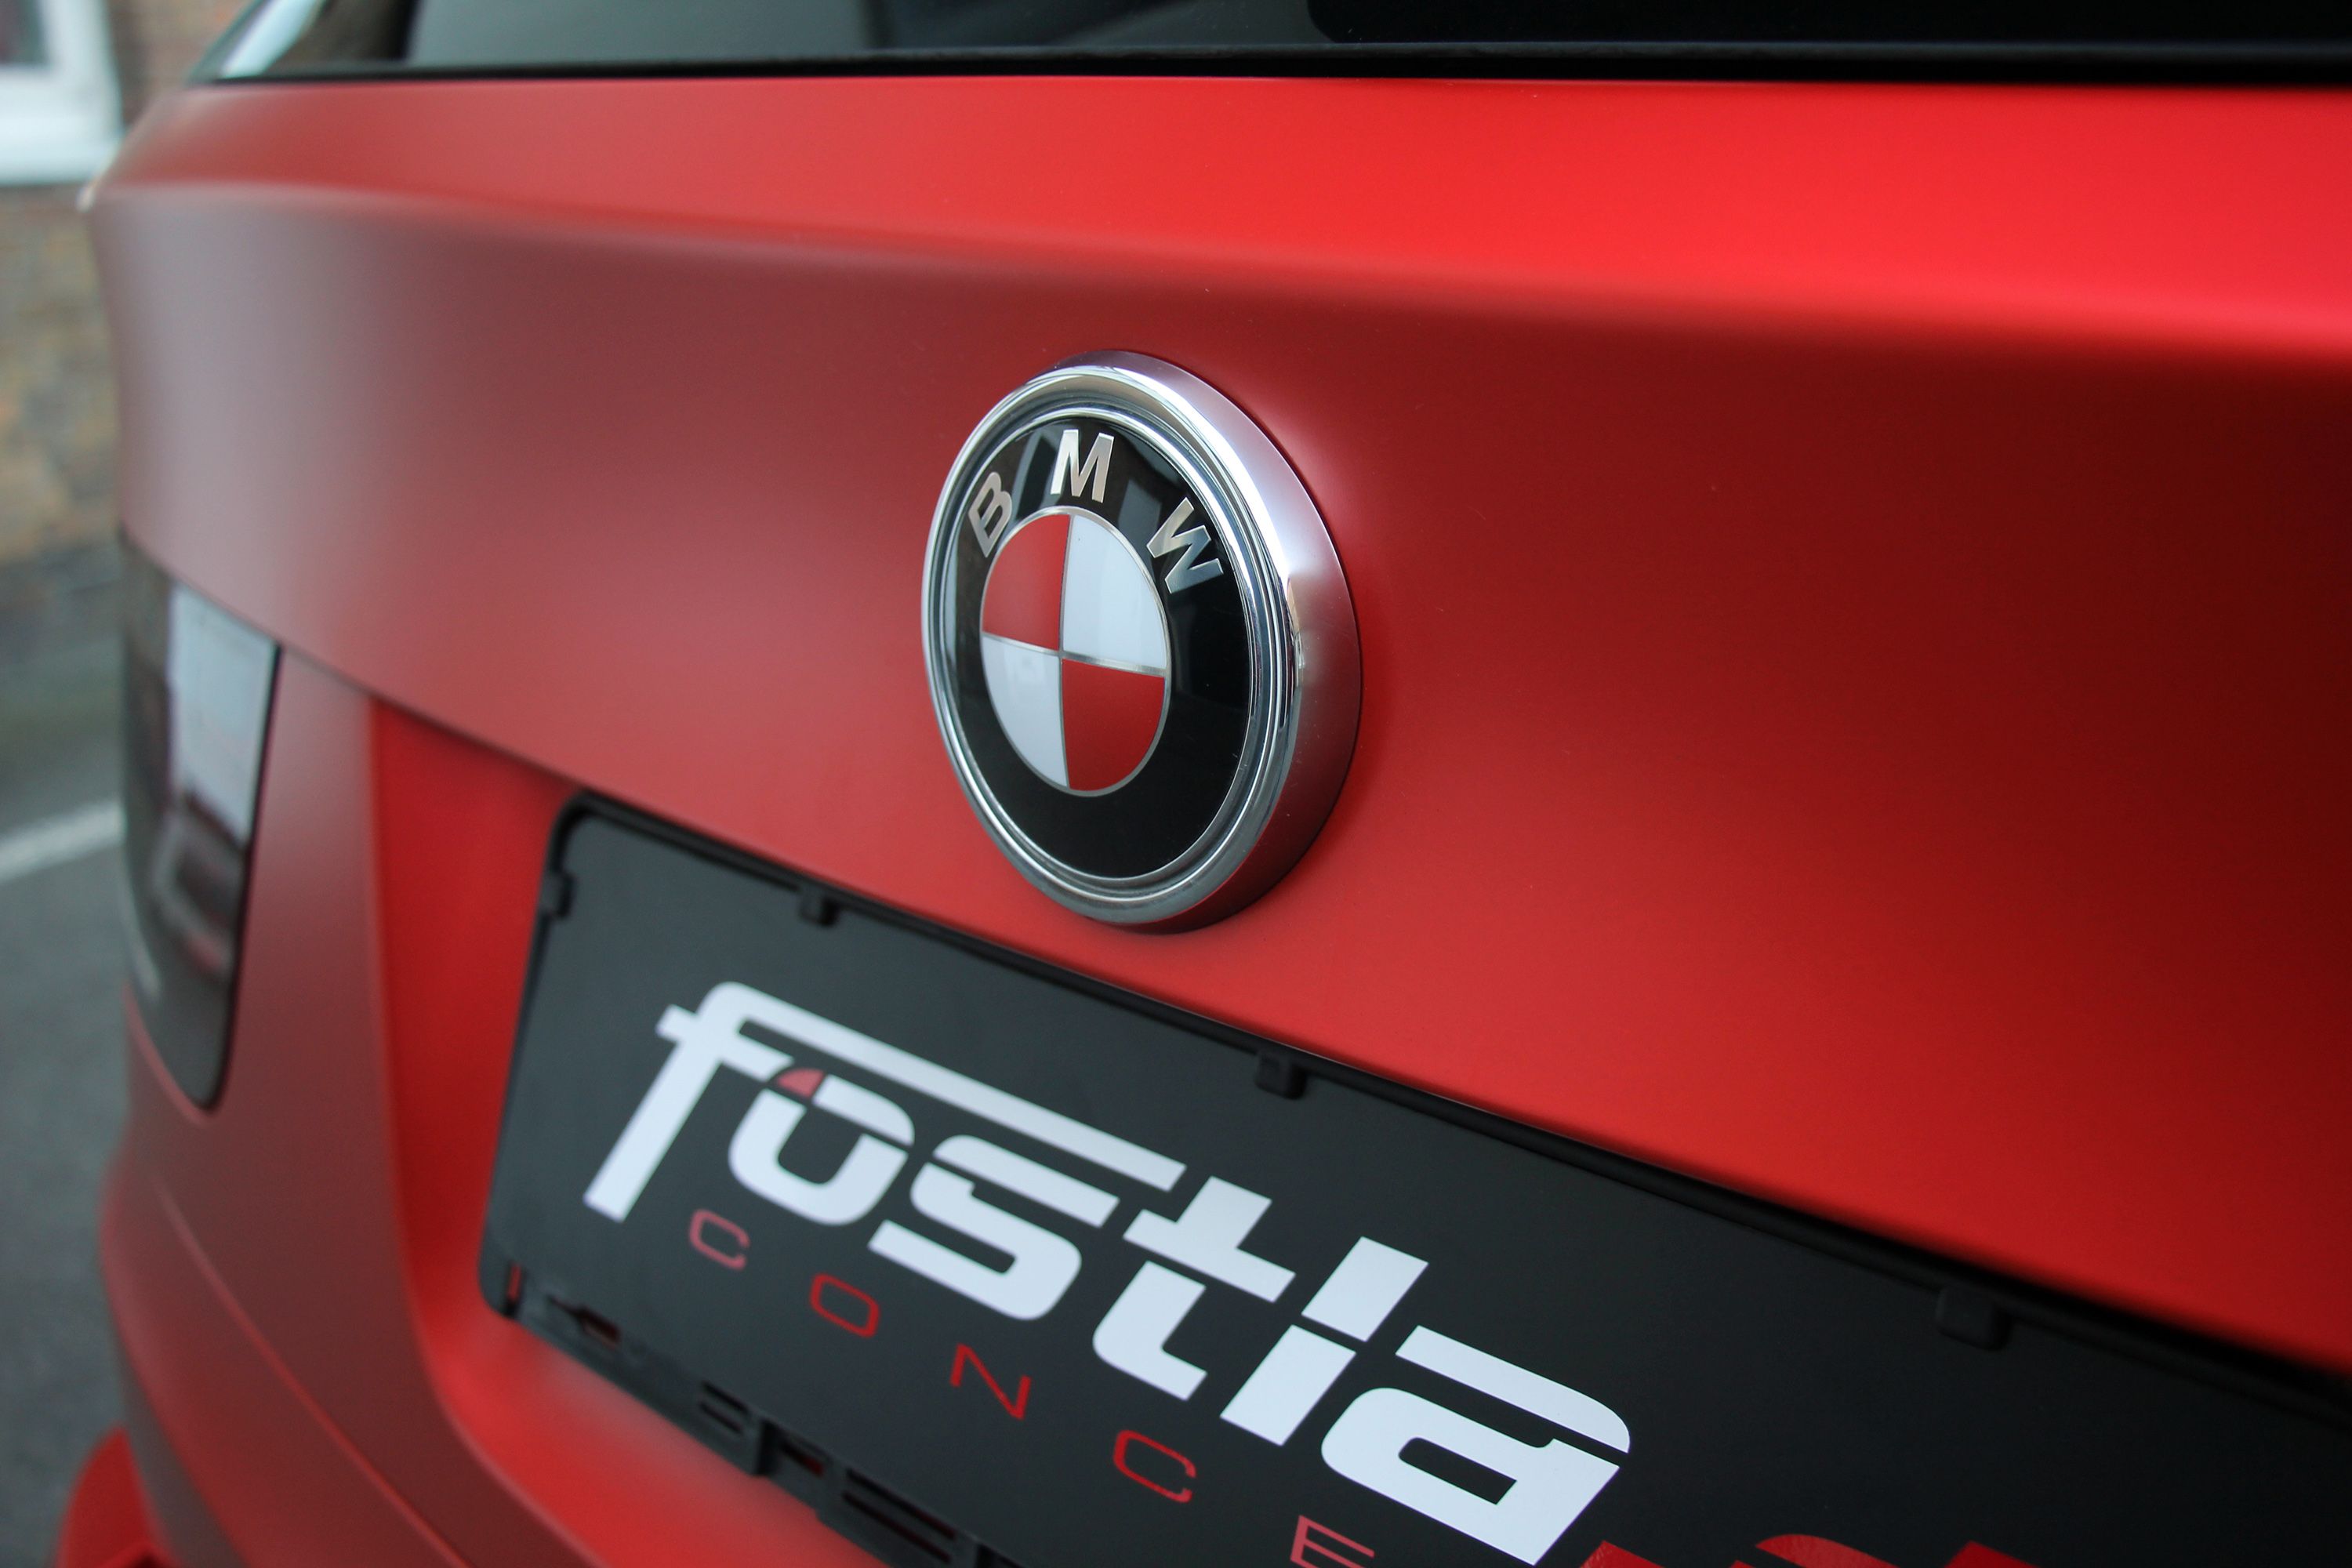 2014 BMW X5 M By Fostla.De